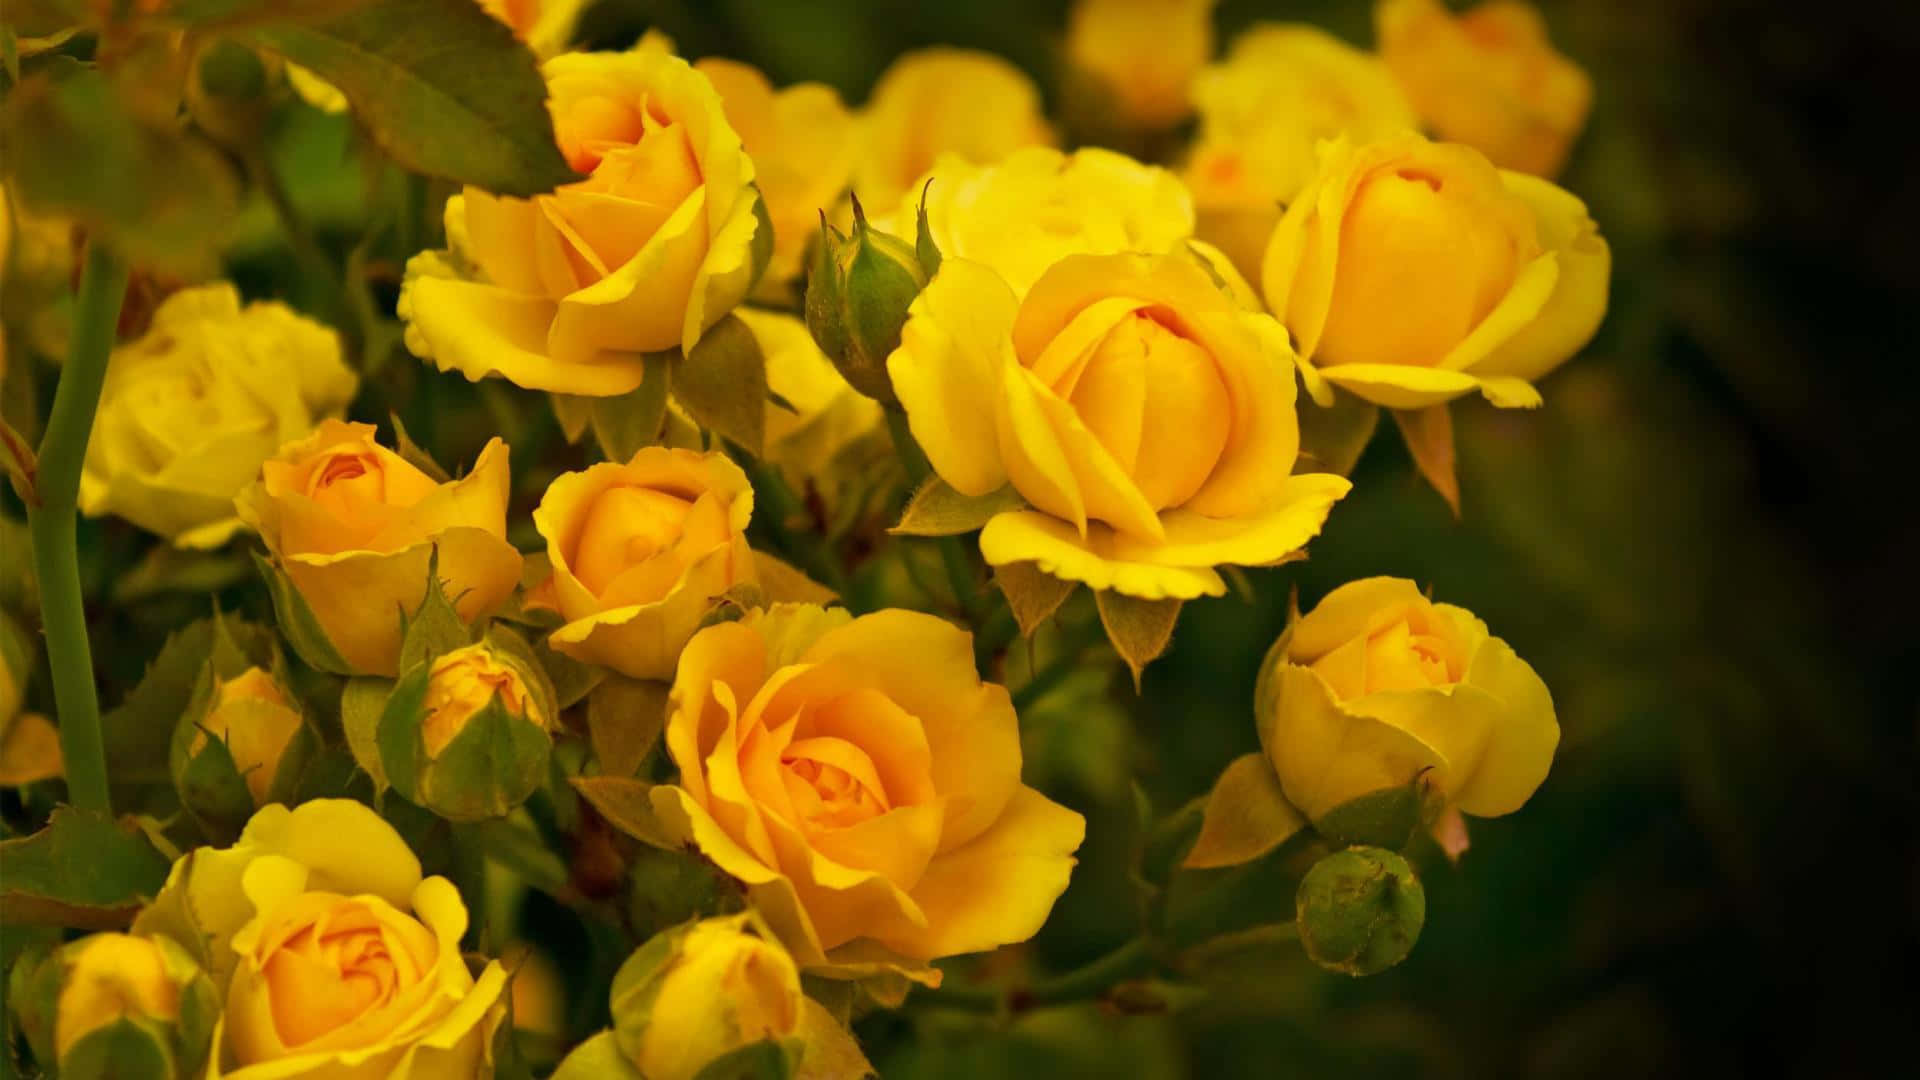 Garden Roses Yellow Flower Arrangement Picture